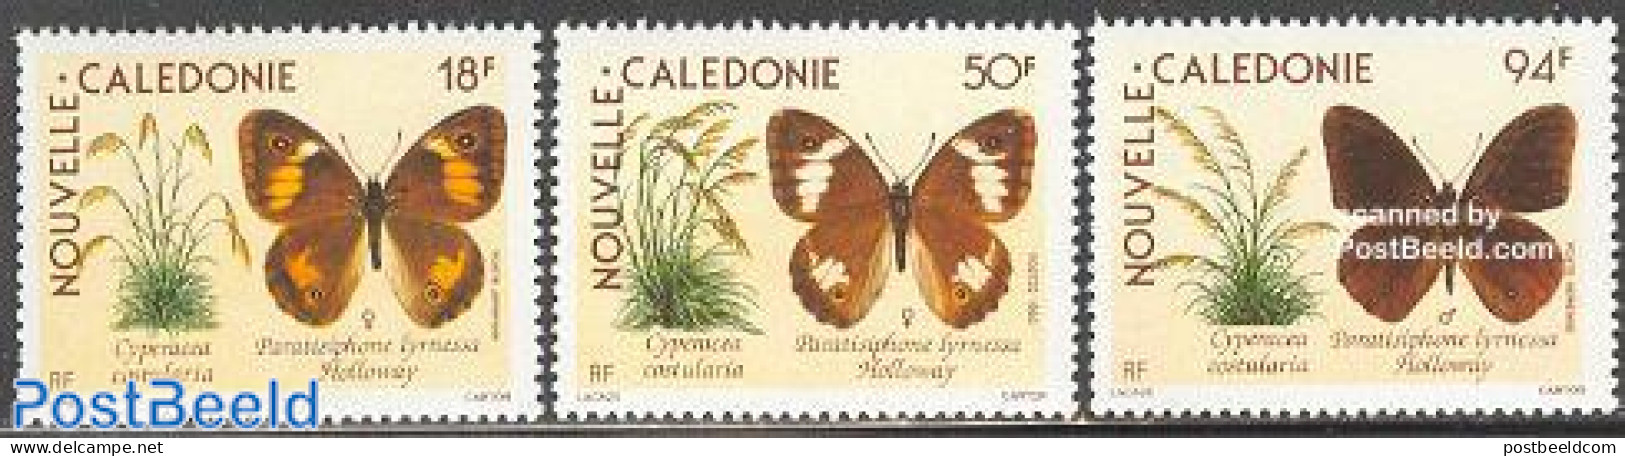 New Caledonia 1990 Butterflies 3v, Mint NH, Nature - Butterflies - Neufs